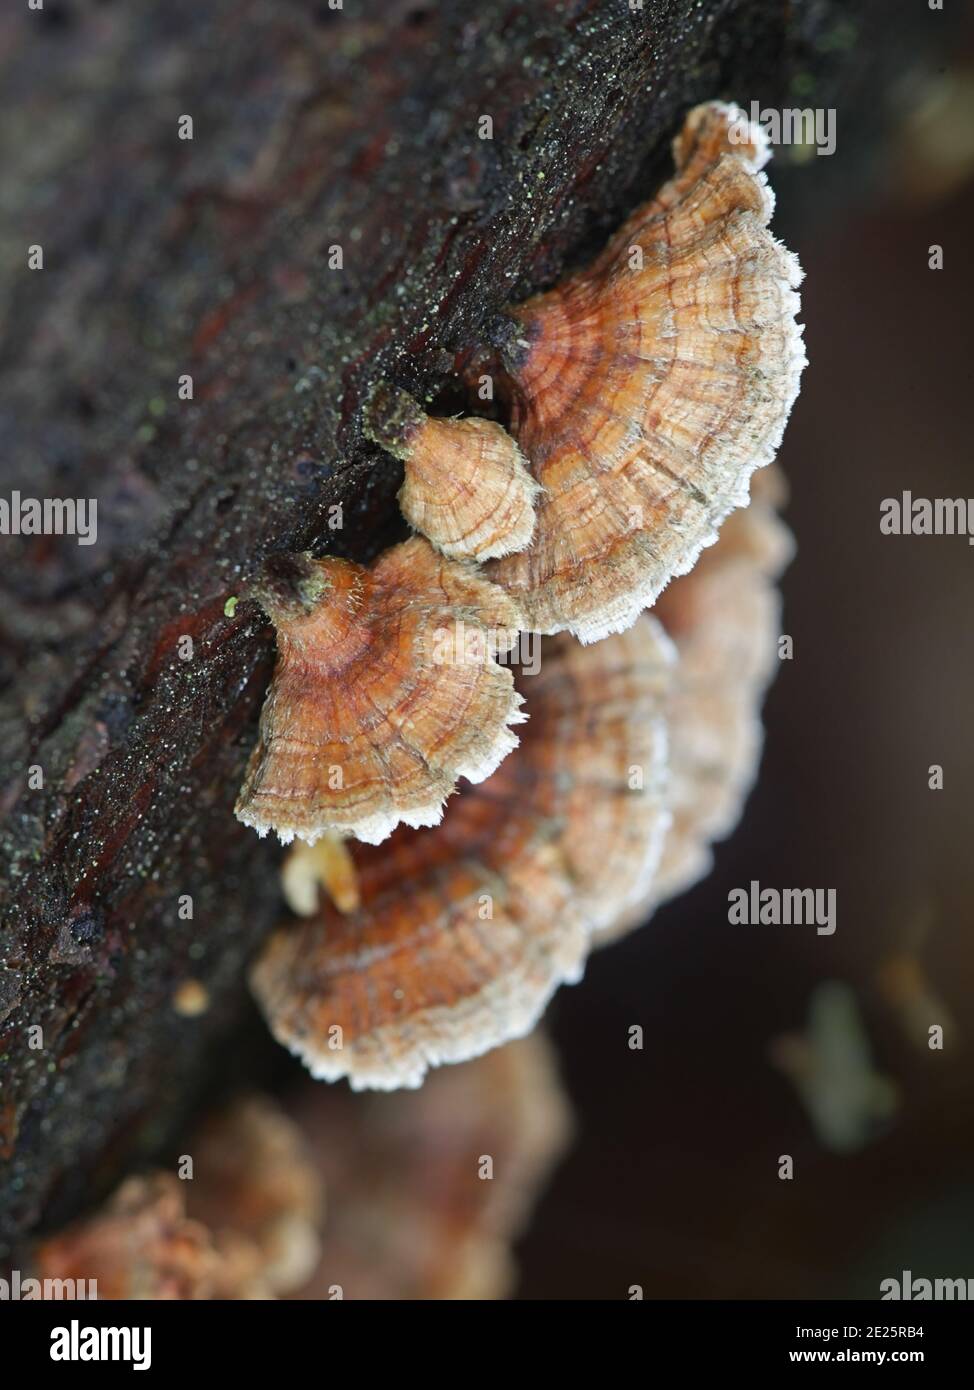 Stereum sanguinolentum, known as bleeding conifer crust, wild fungus from Finland Stock Photo